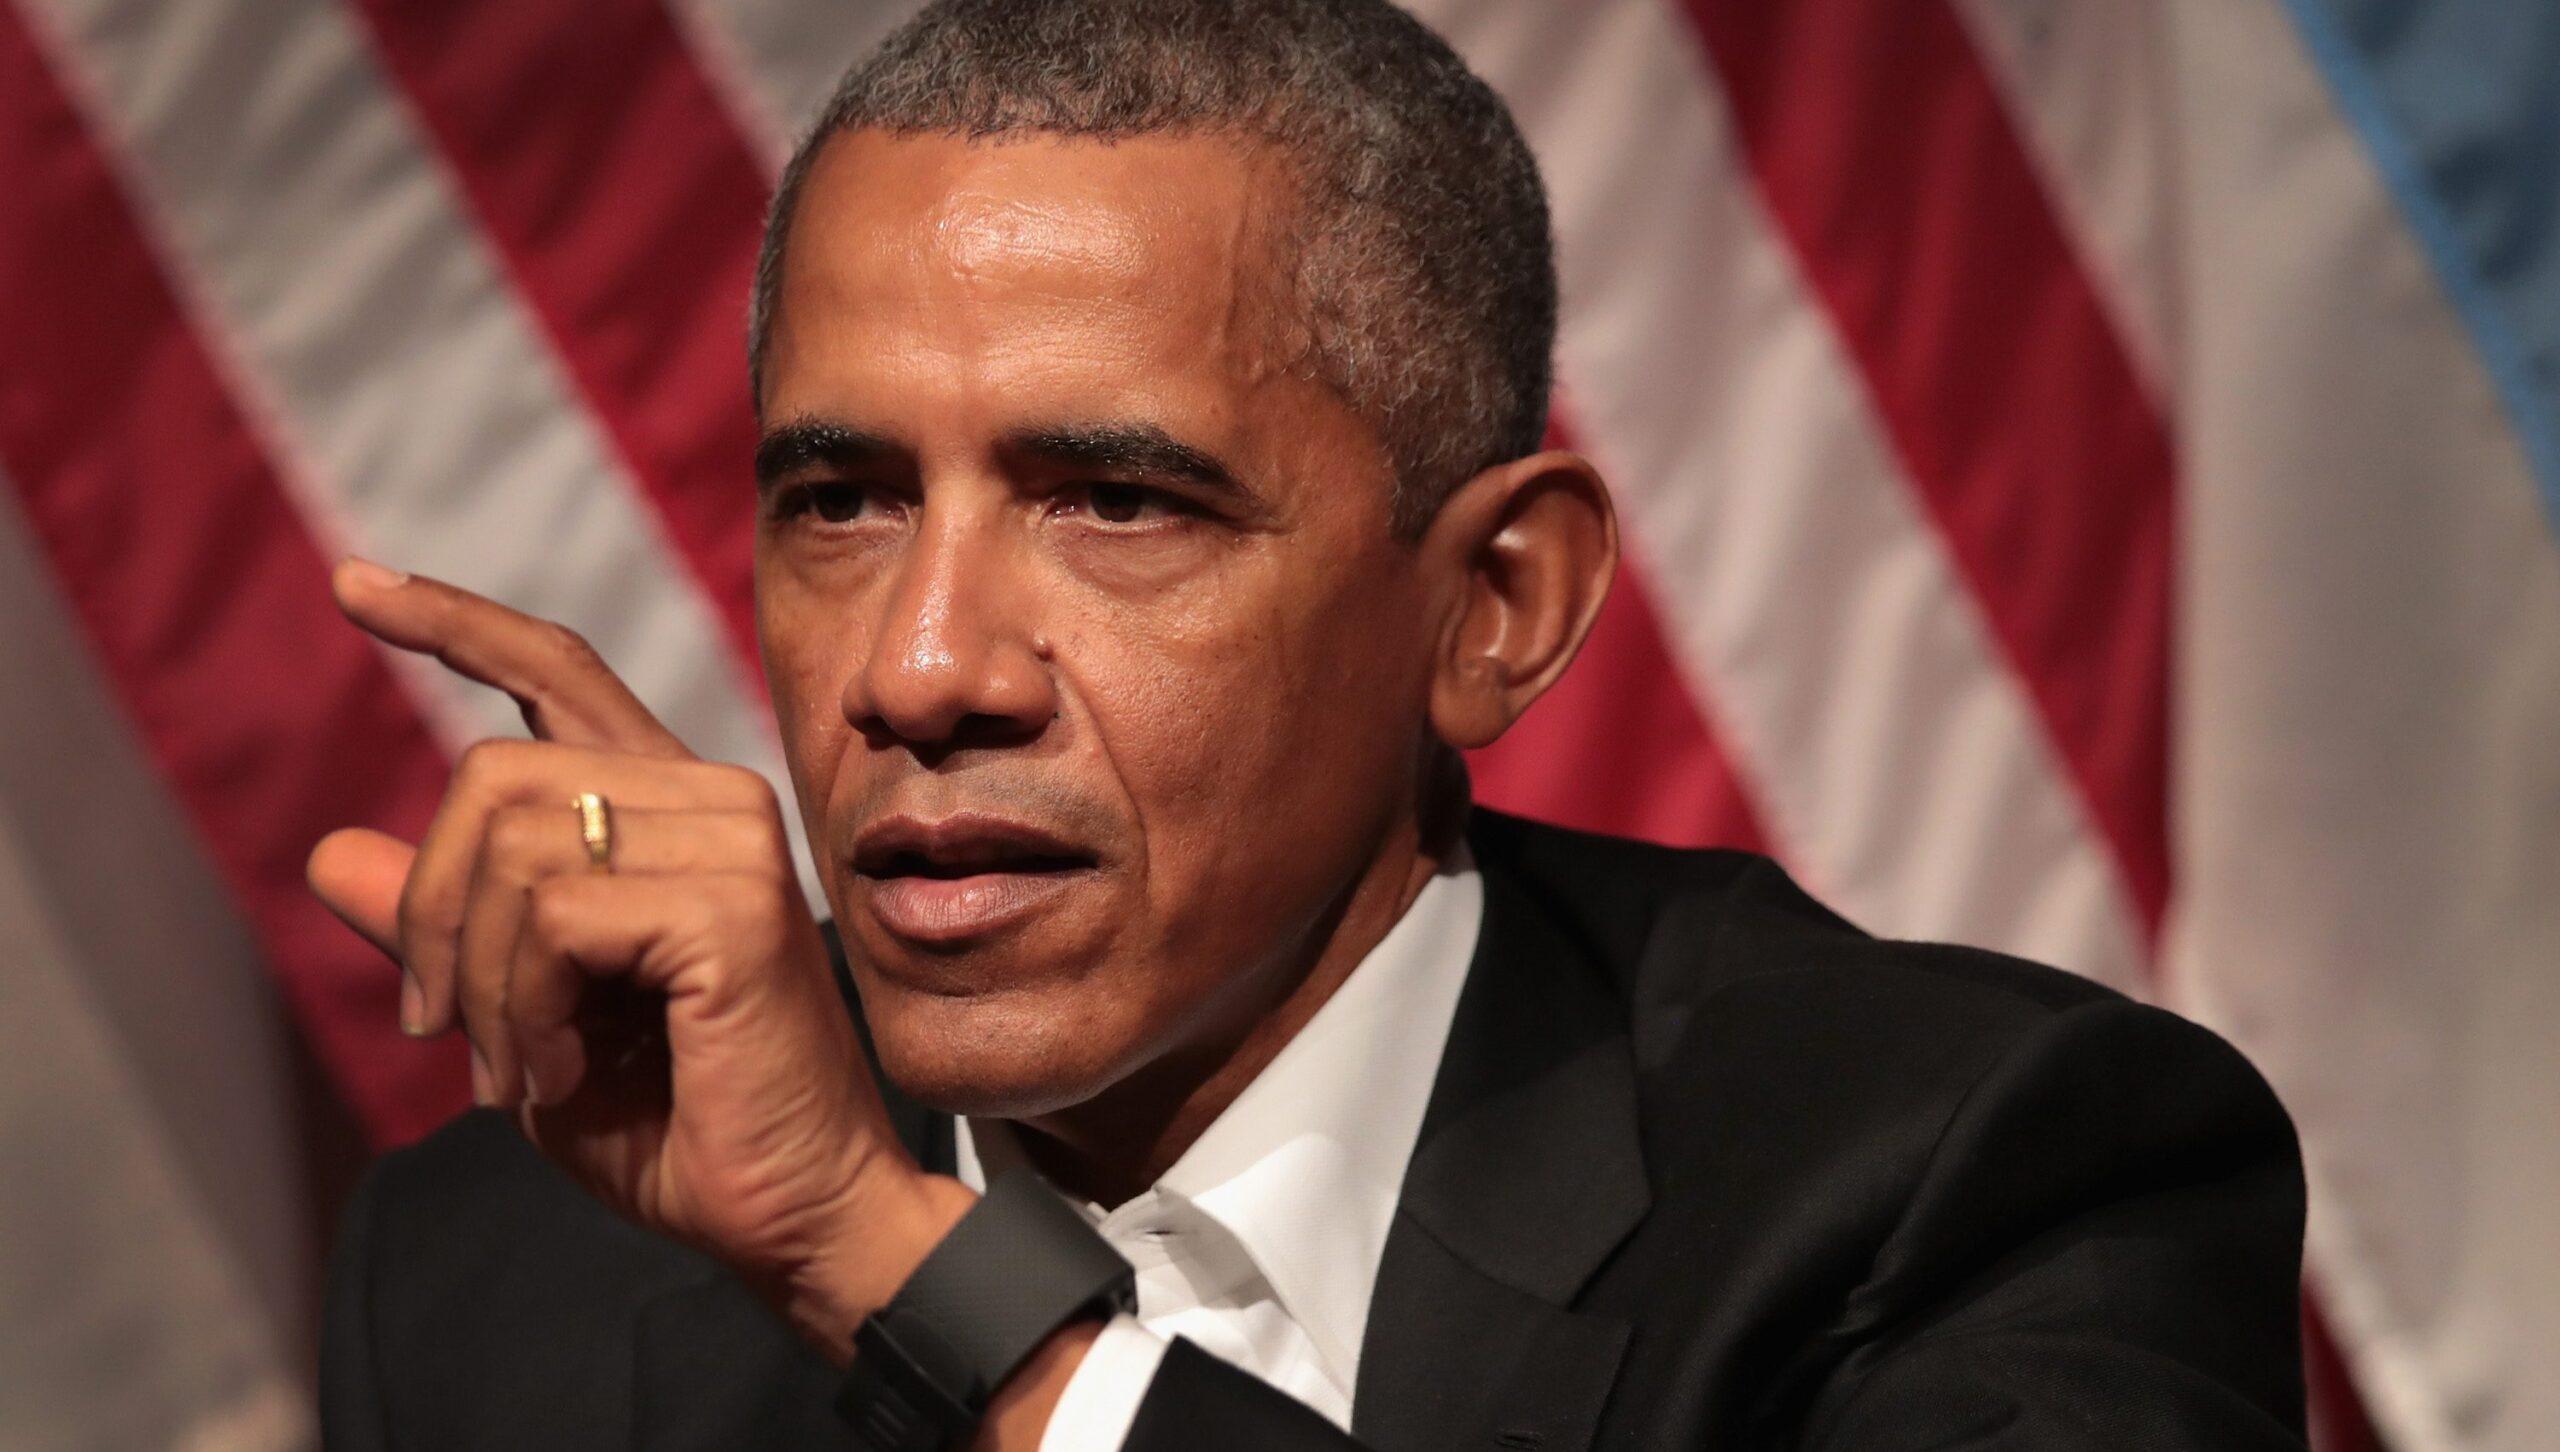 Atacar a dreamers es cruel, porque no han hecho nada malo, dice Obama sobre cancelación del DACA